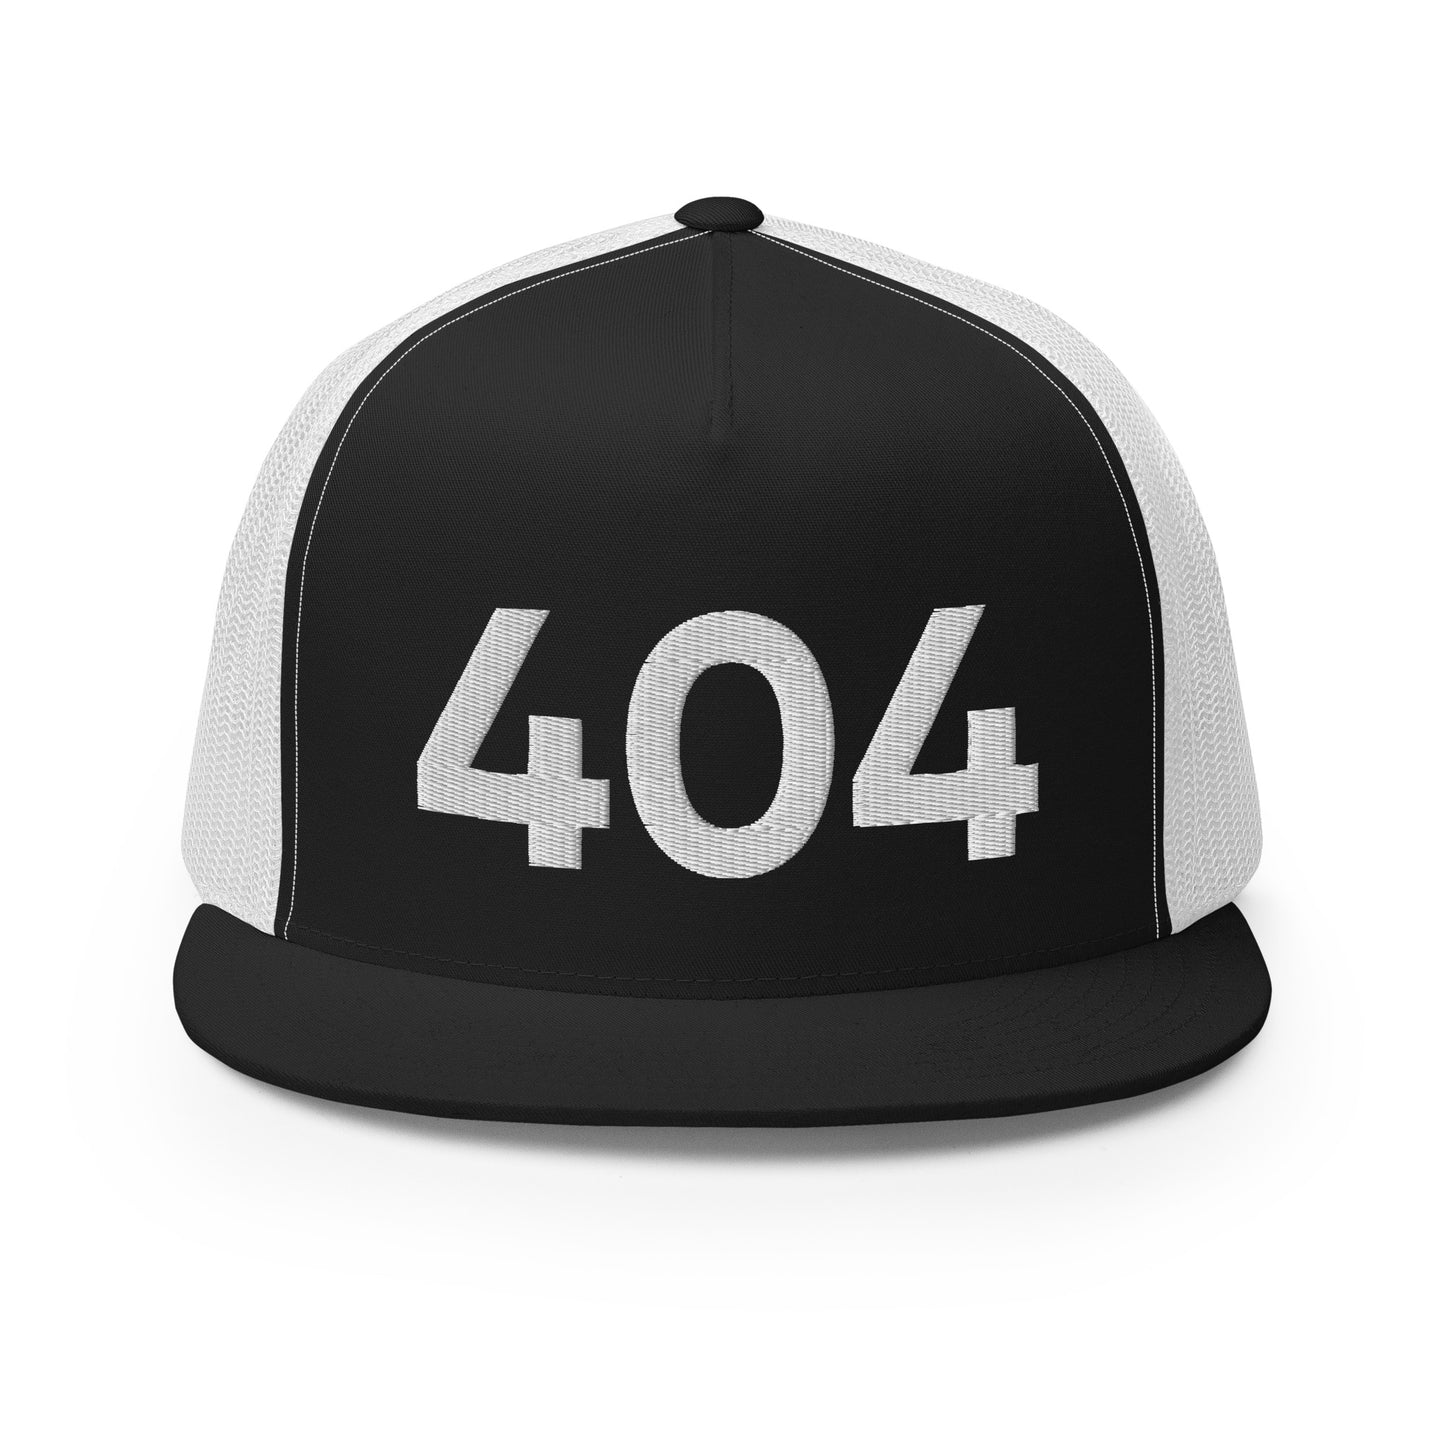 404 ATL Trucker Hat